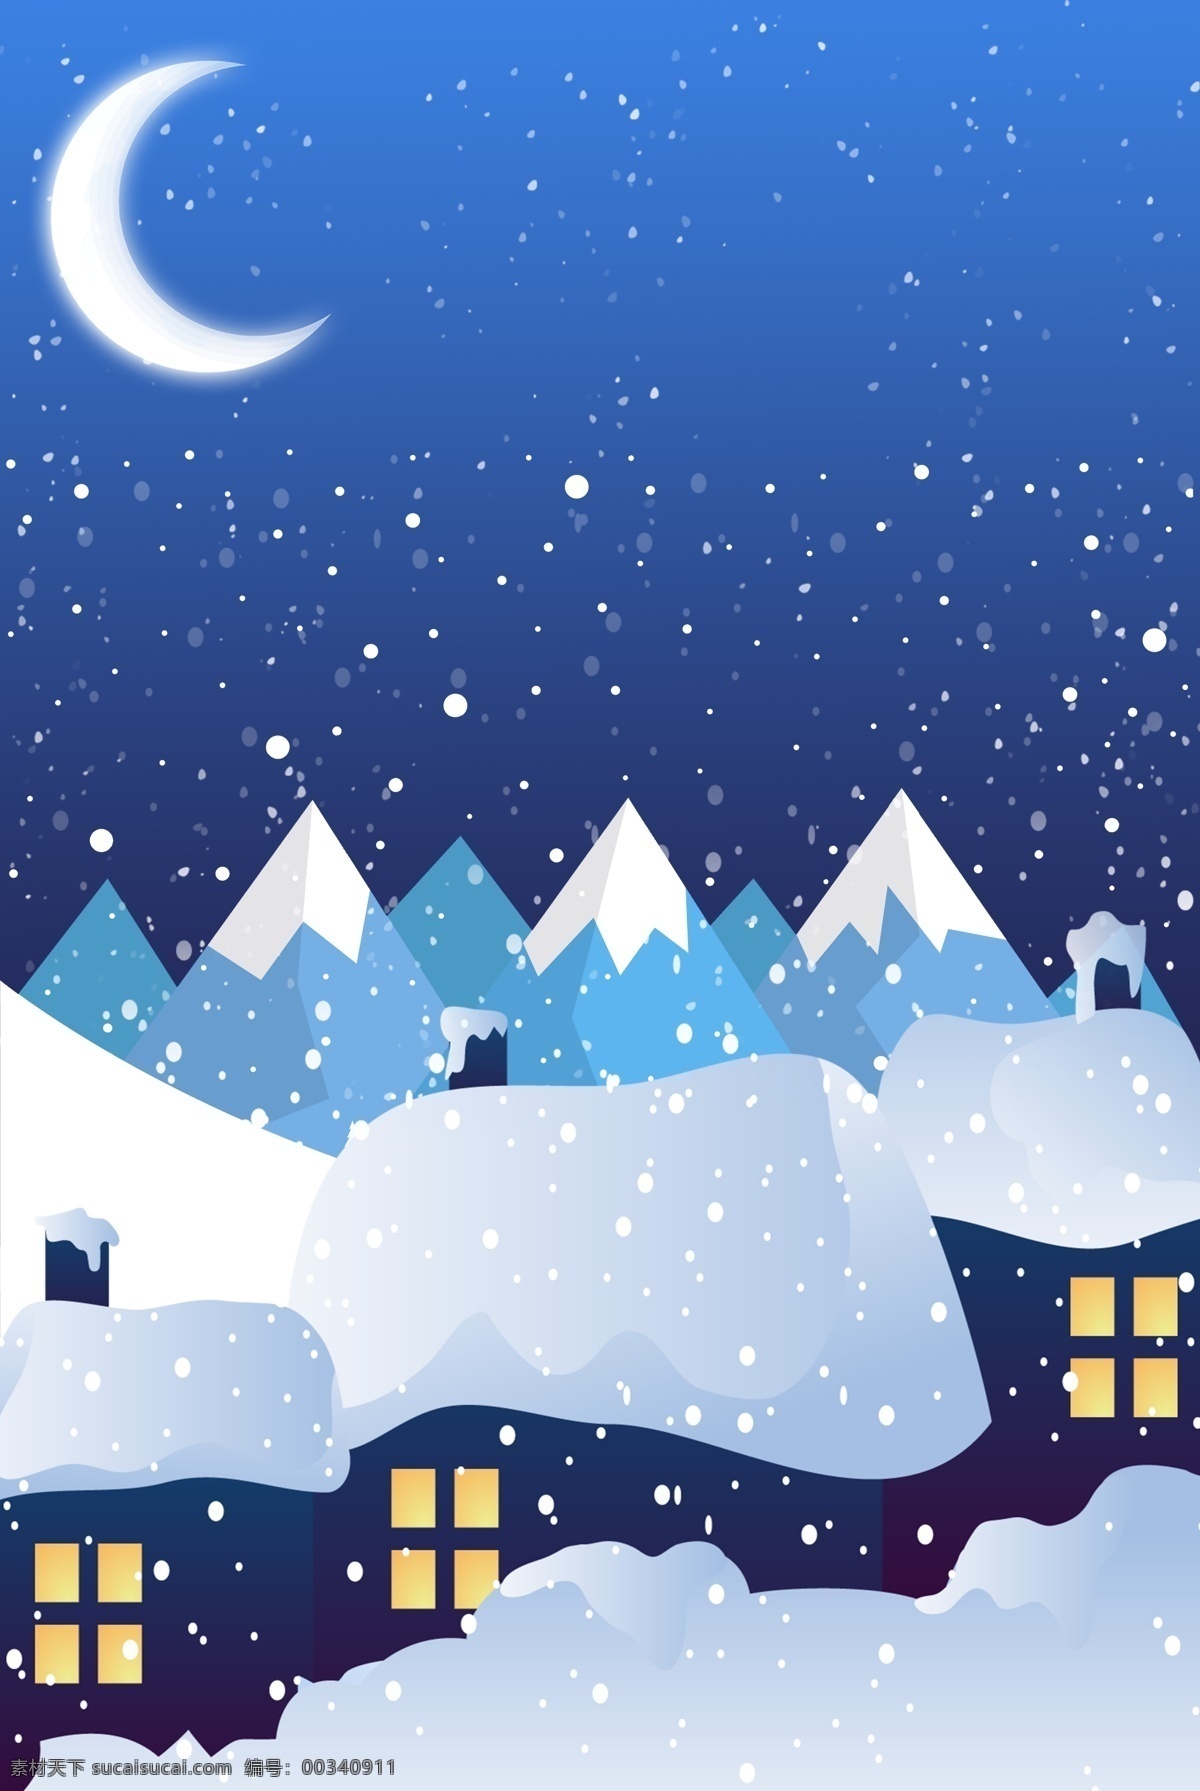 蓝色 深夜 十二月 你好 海报 背景 十二月你好 冬天 冬季 夜晚 海报背景 房屋 雪屋 雪地